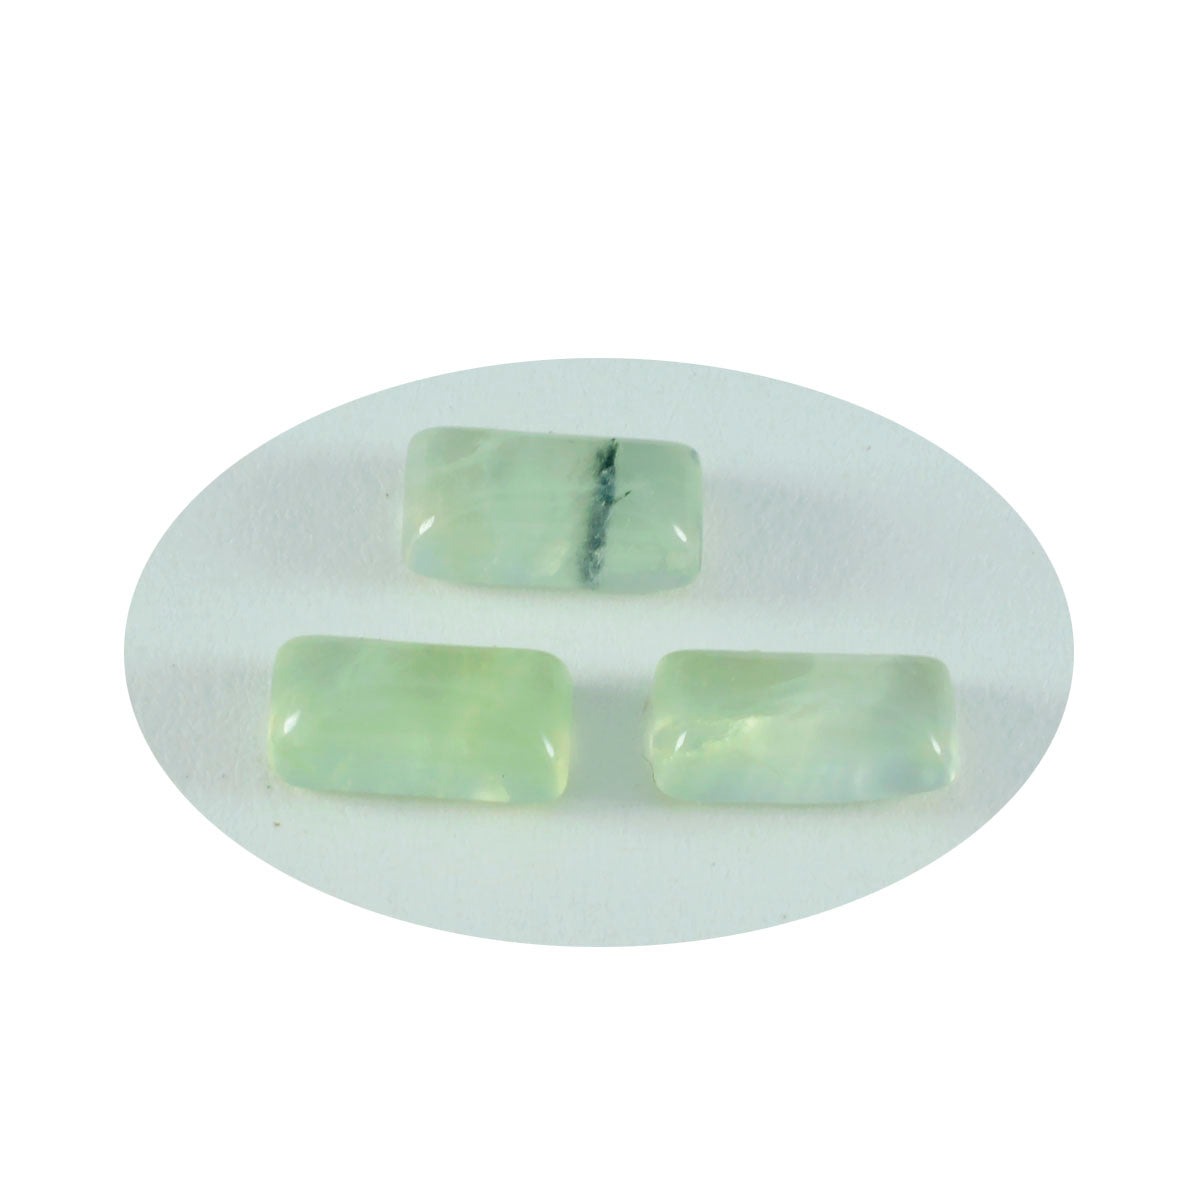 riyogems 1pc グリーン プレナイト カボション 9x18 mm バゲット形状の素晴らしい品質のルース宝石